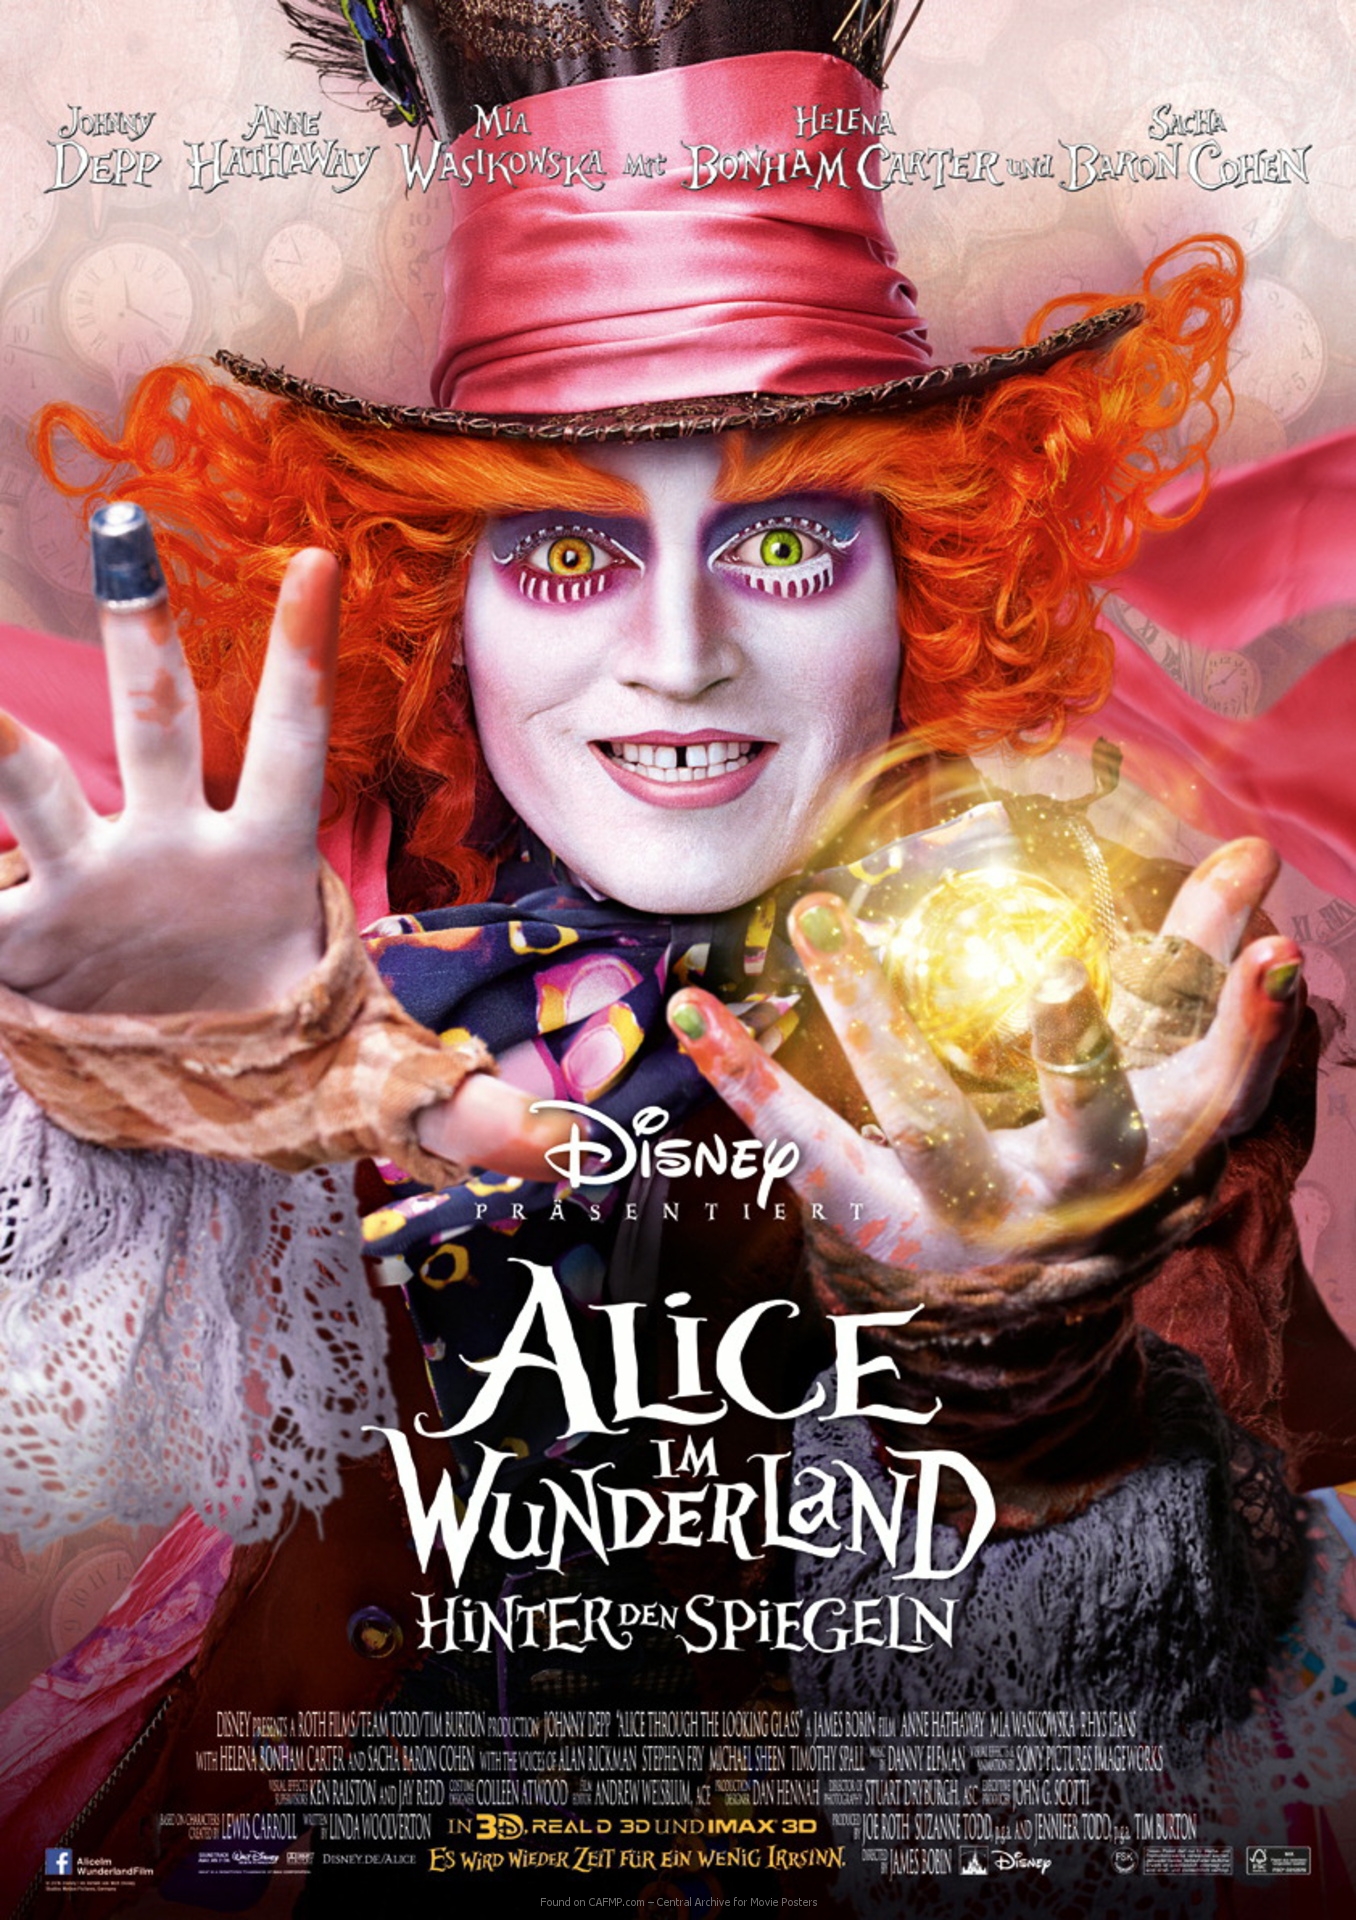 Movie Poster Alice Im Wunderland Hinter Den Spiegeln On Cafmp